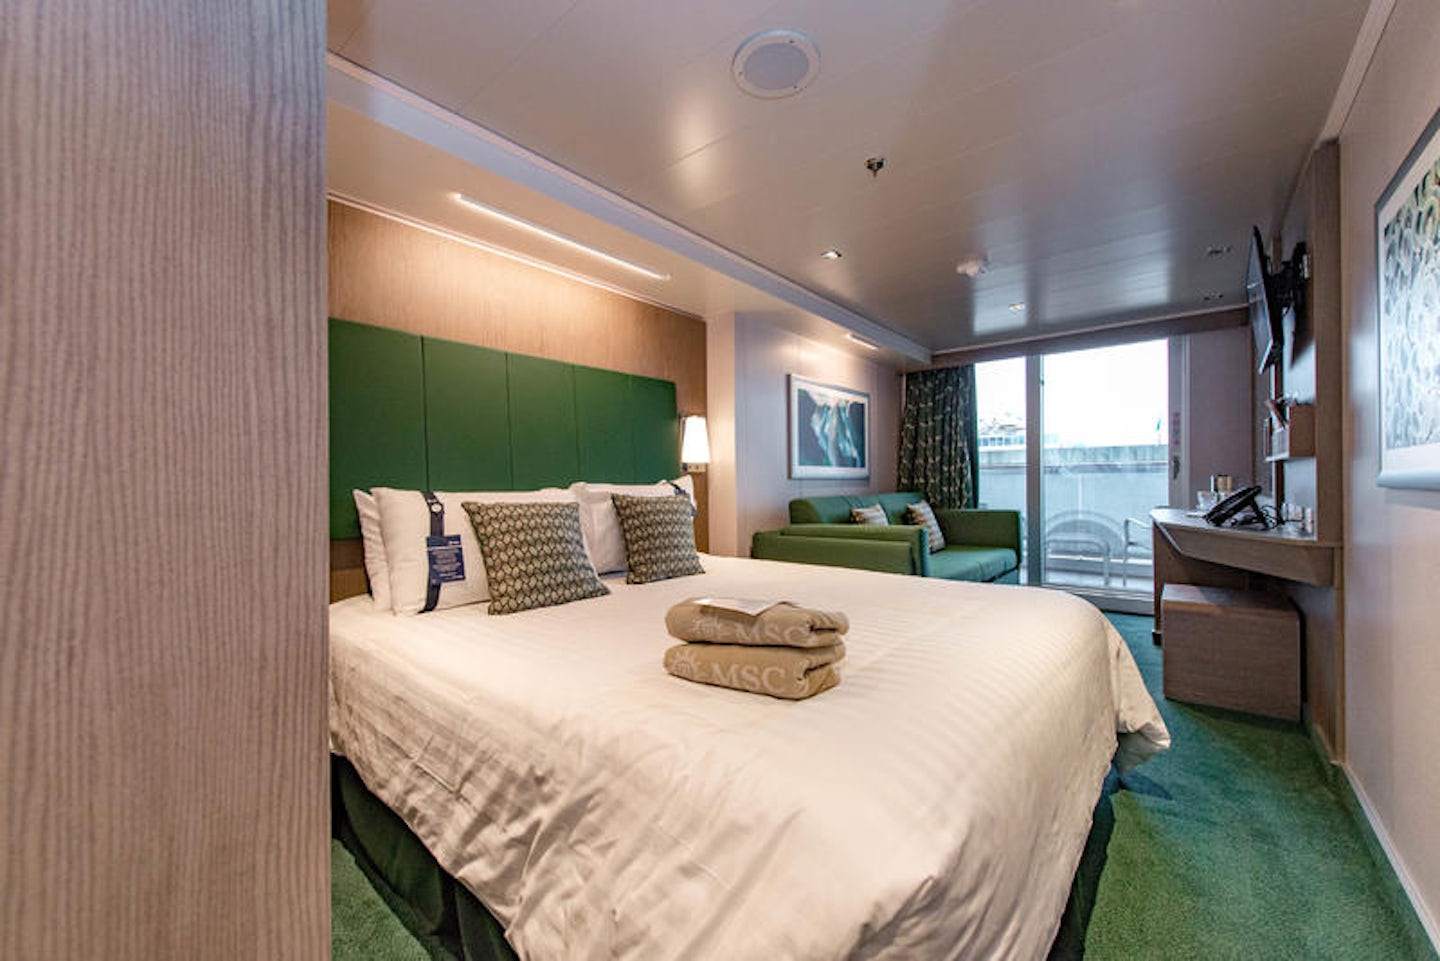 msc cruise balcony rooms